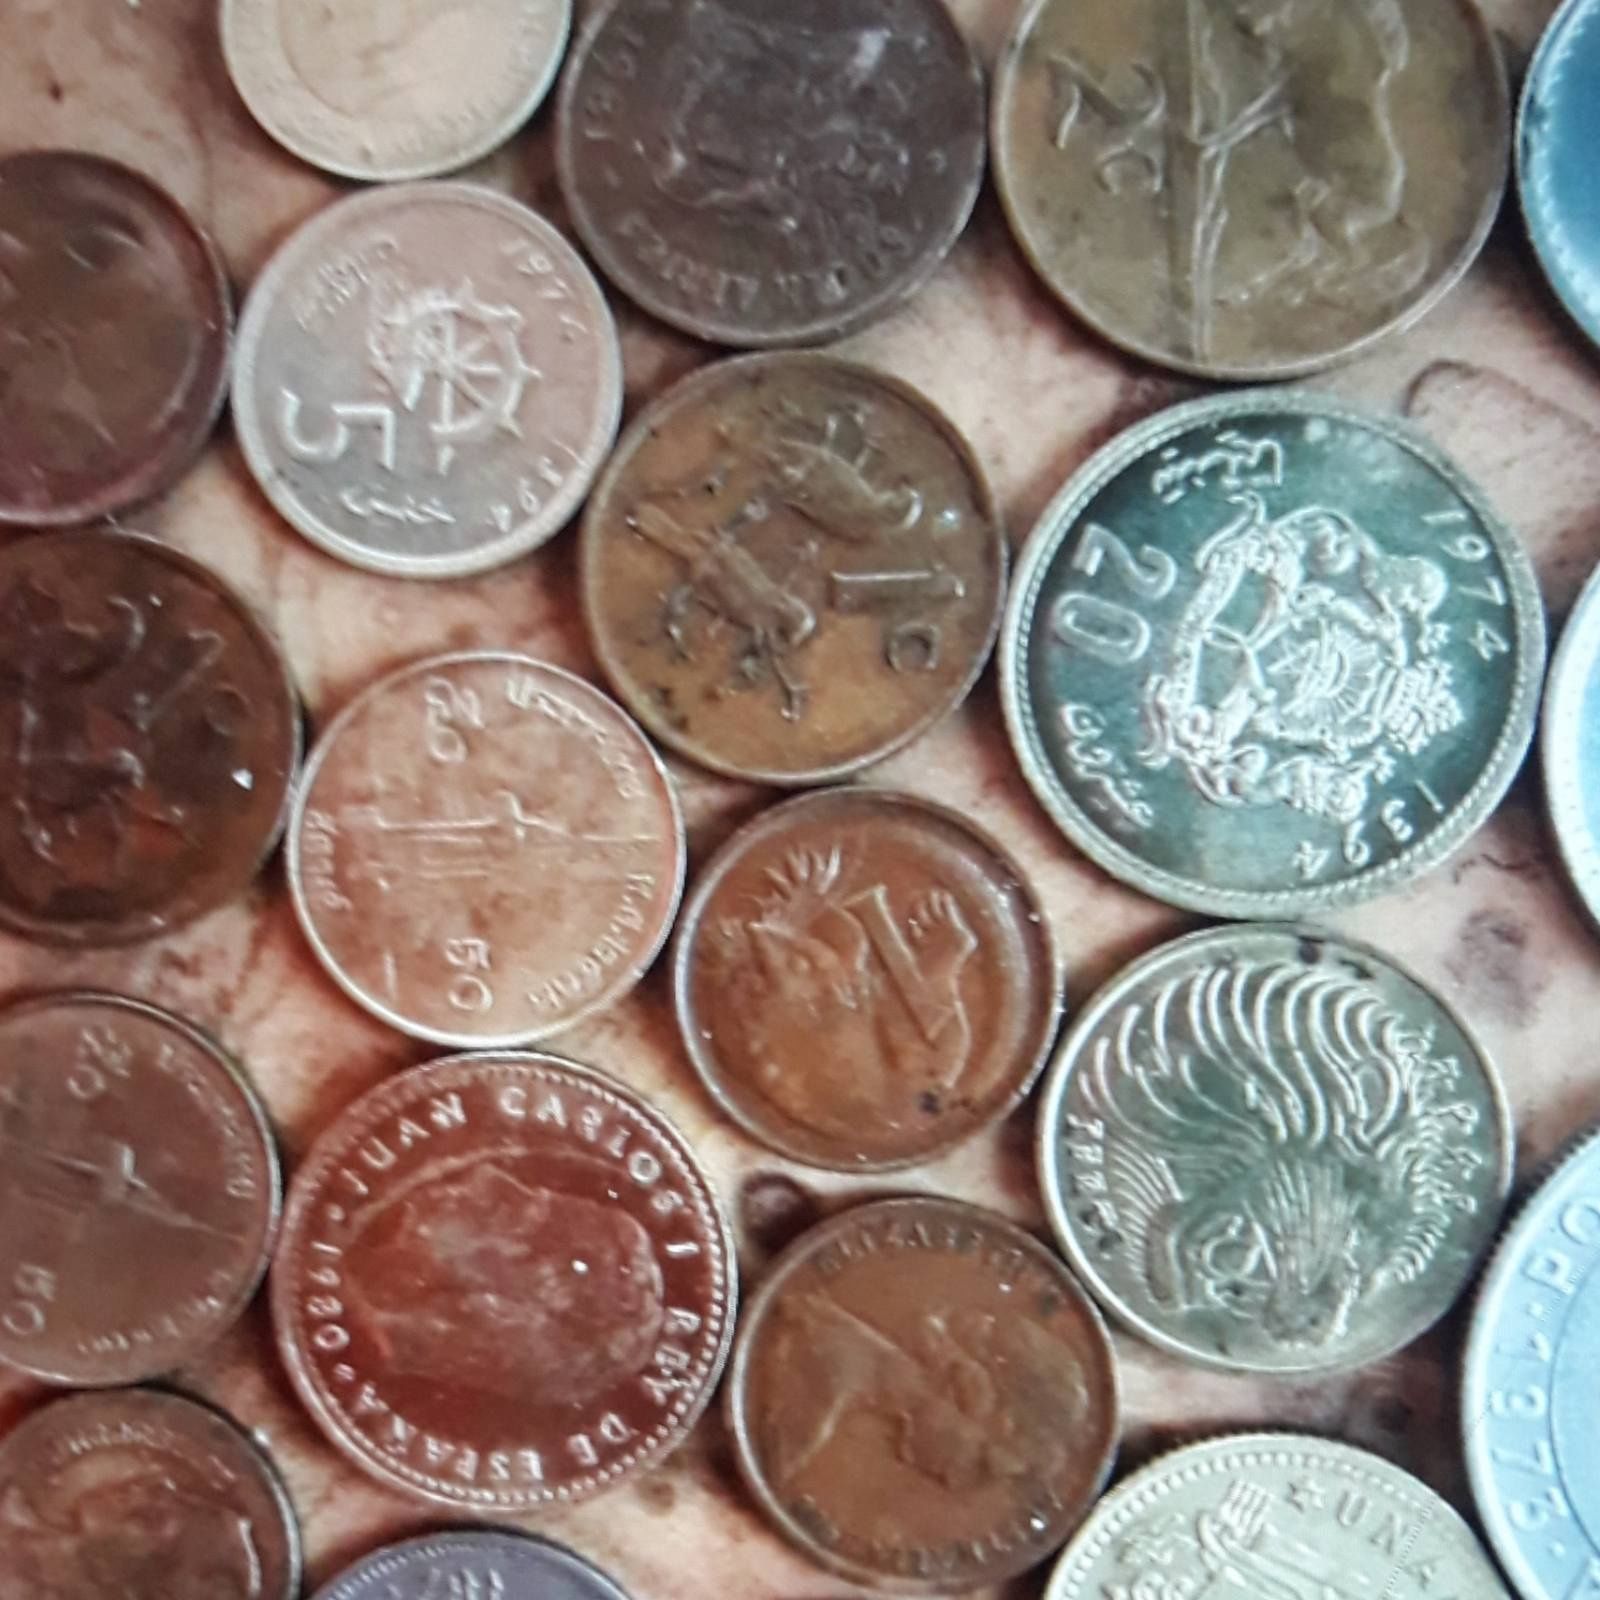 Коллекция монет разных стран